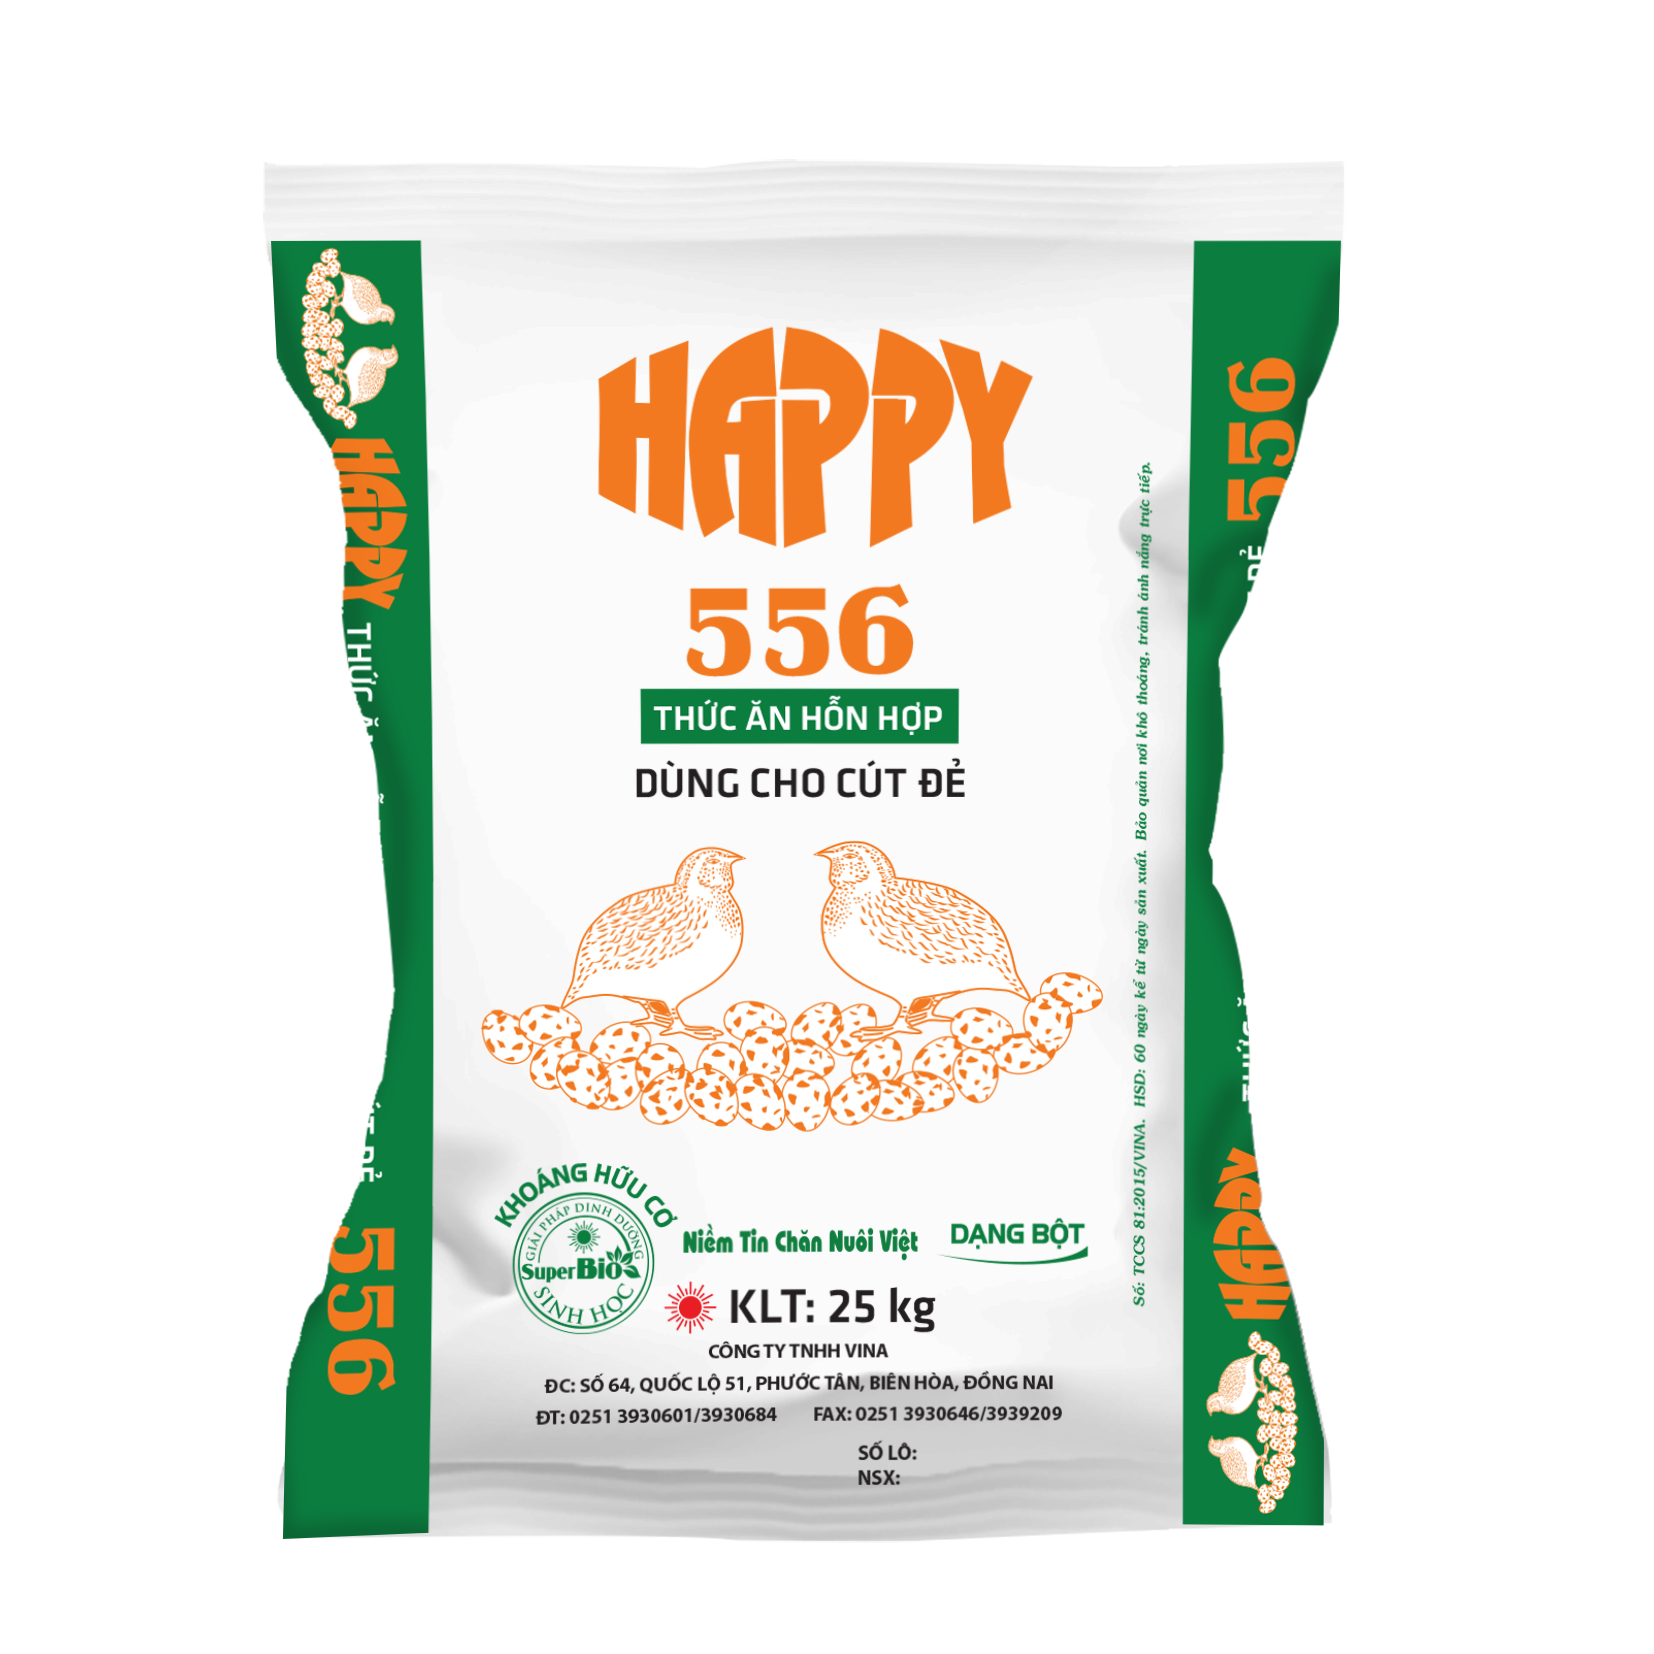 HAPPY 556